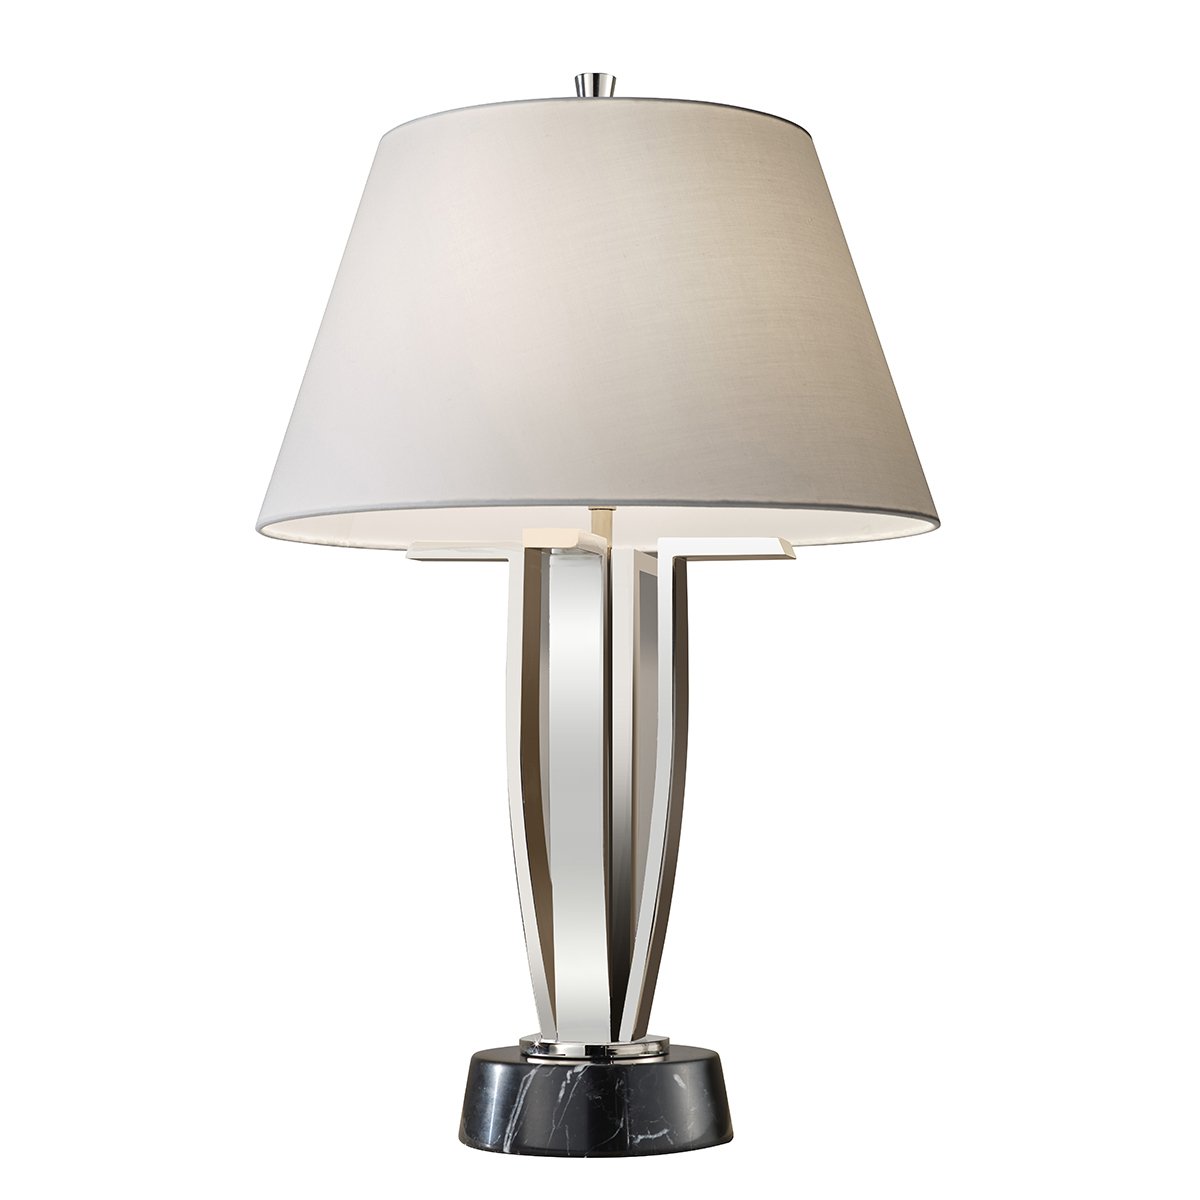 Elstead Silvershore Light Tischlampe nickel poliert Stoffschirm weiß -->  Leuchten & Lampen online kaufen im Shop